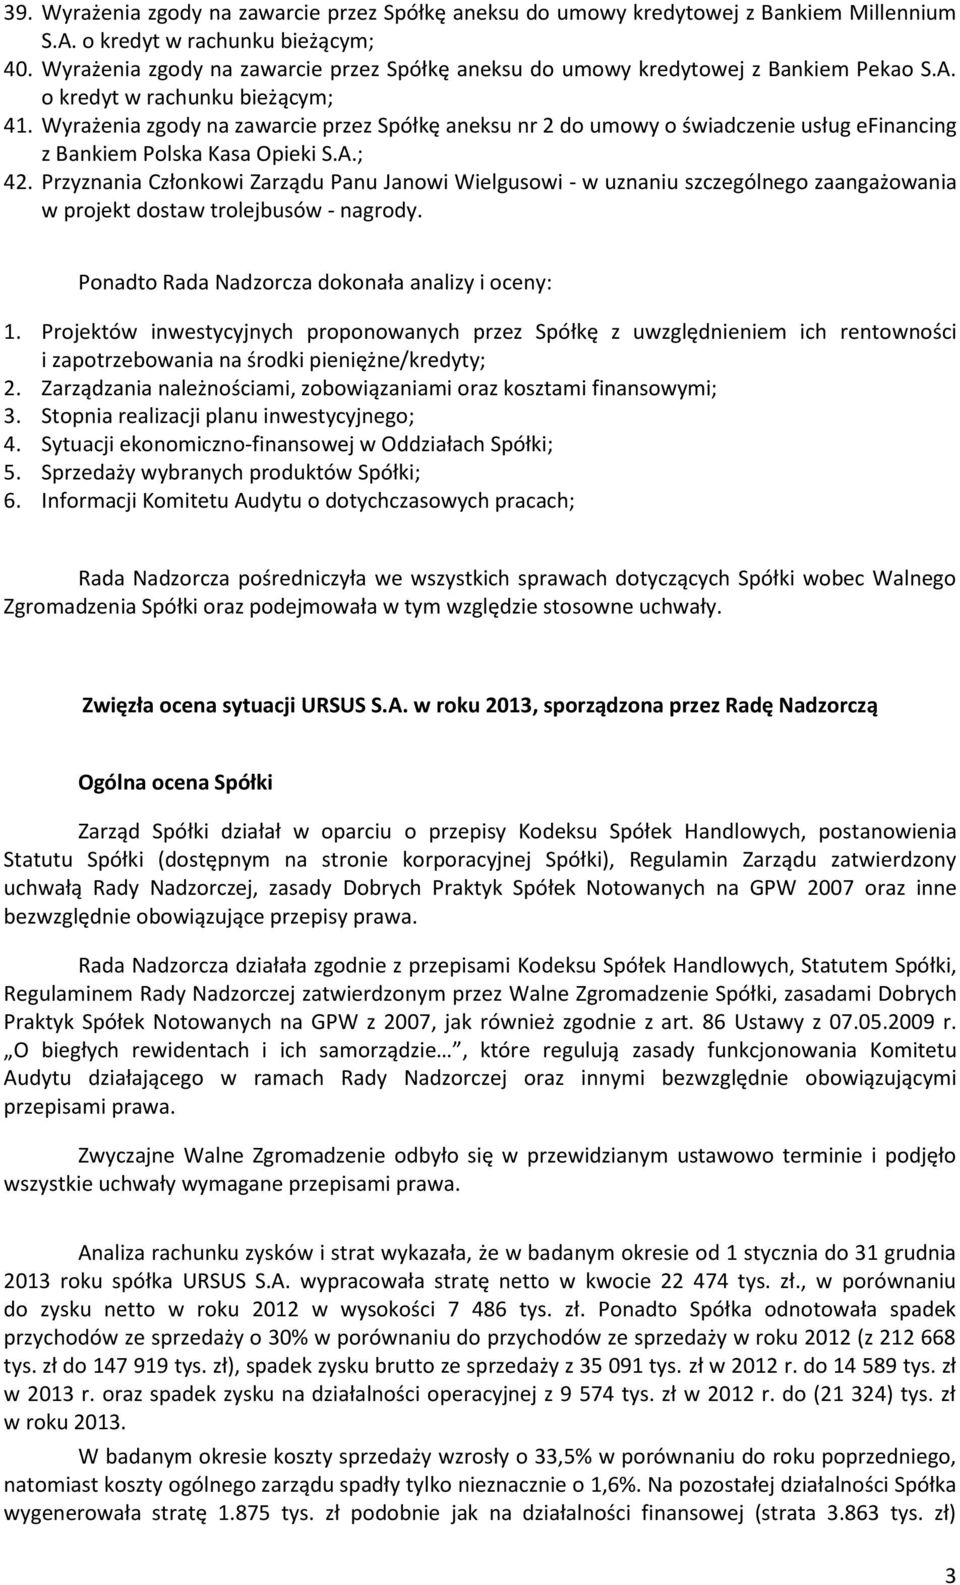 Wyrażenia zgody na zawarcie przez Spółkę aneksu nr 2 do umowy o świadczenie usług efinancing z Bankiem Polska Kasa Opieki S.A.; 42.